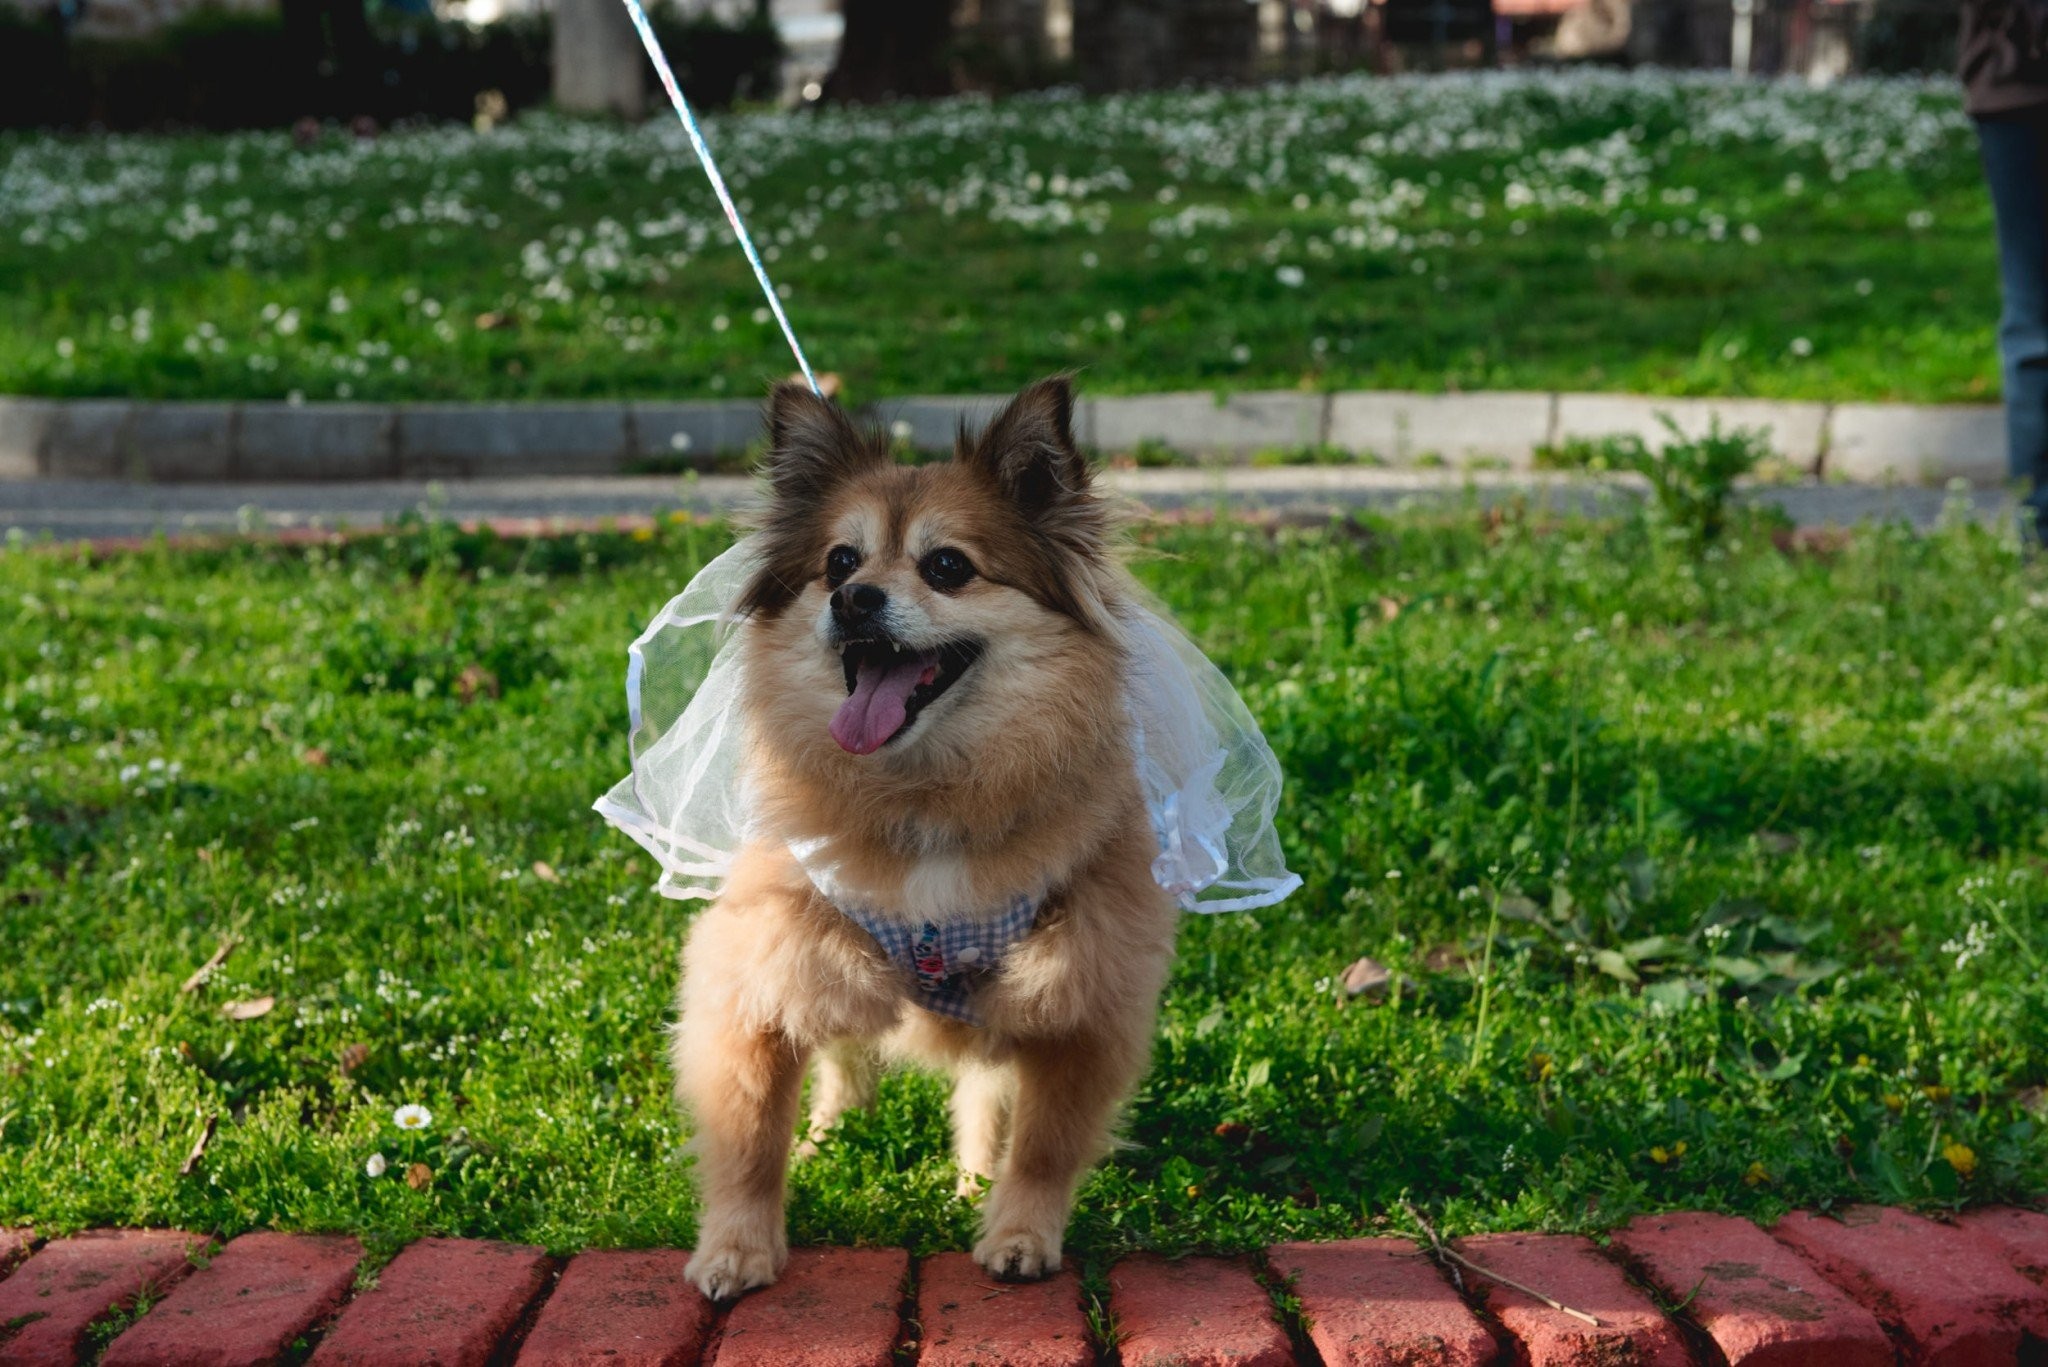 1ο Edessa Dog Carnival … Η Έδεσσα είναι προορισμός που σέβεται τους τετράποδους φίλους